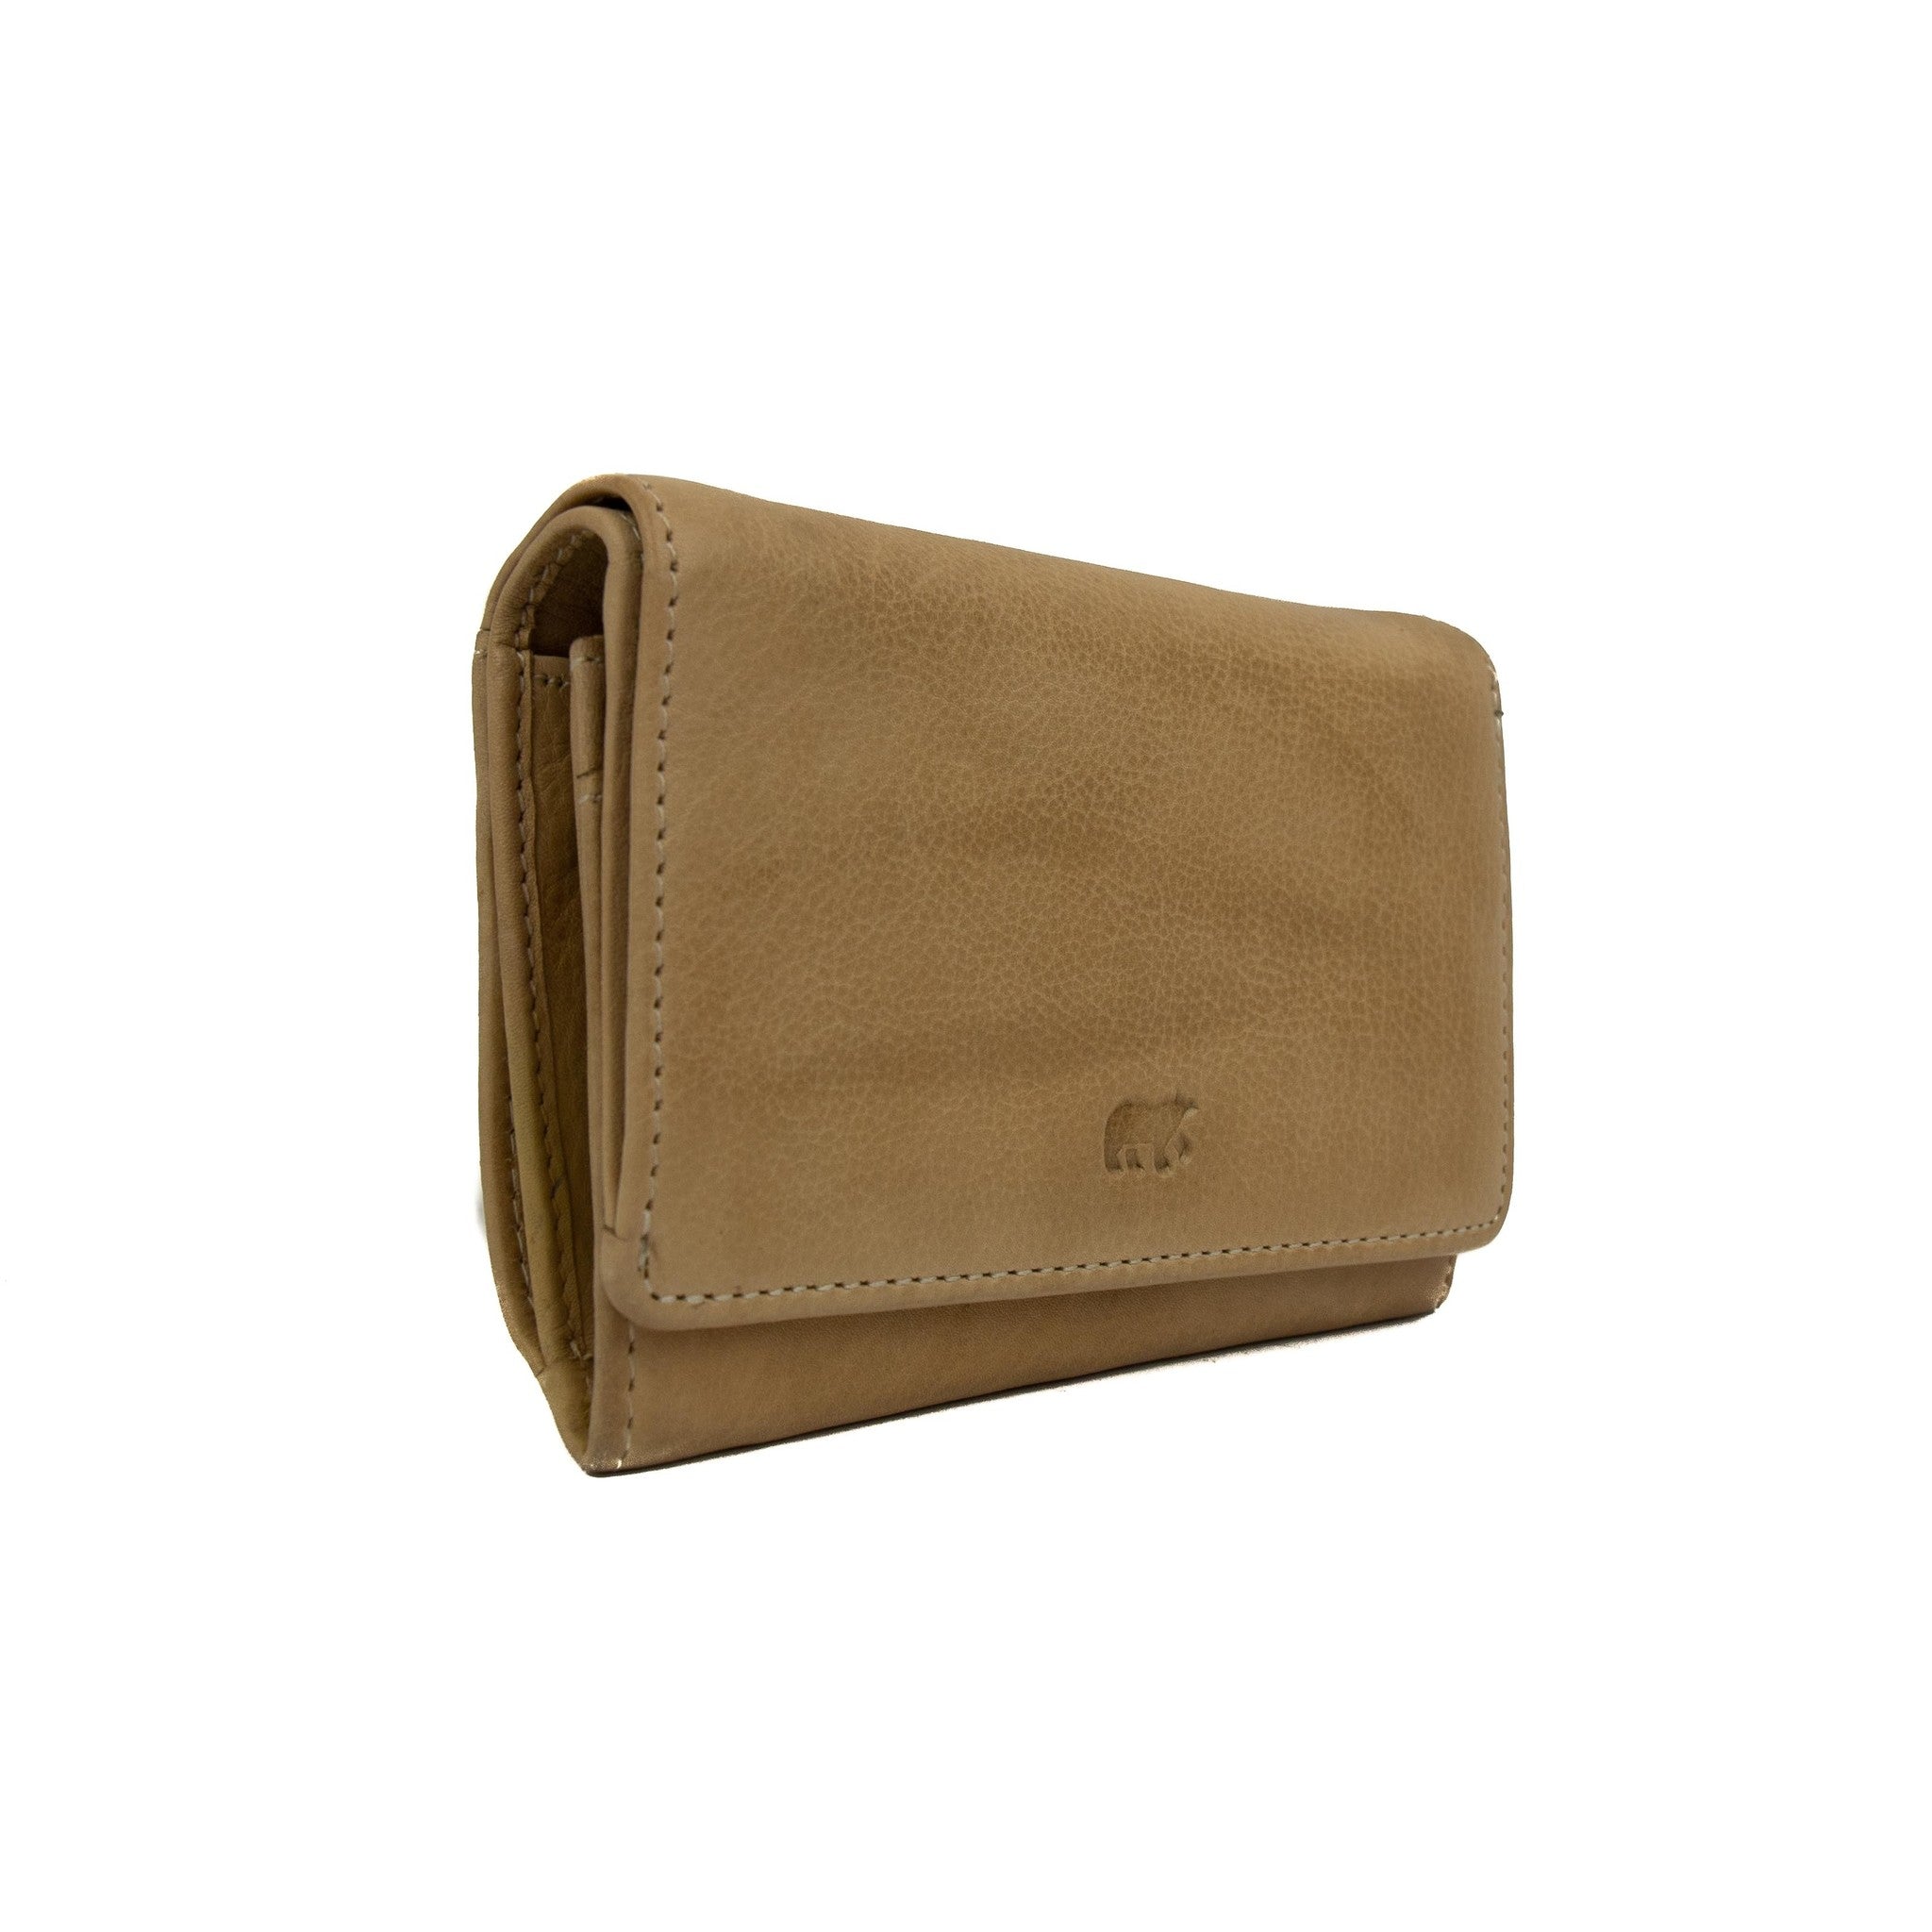 Wrap wallet 'Flappie' beige - CL 15572